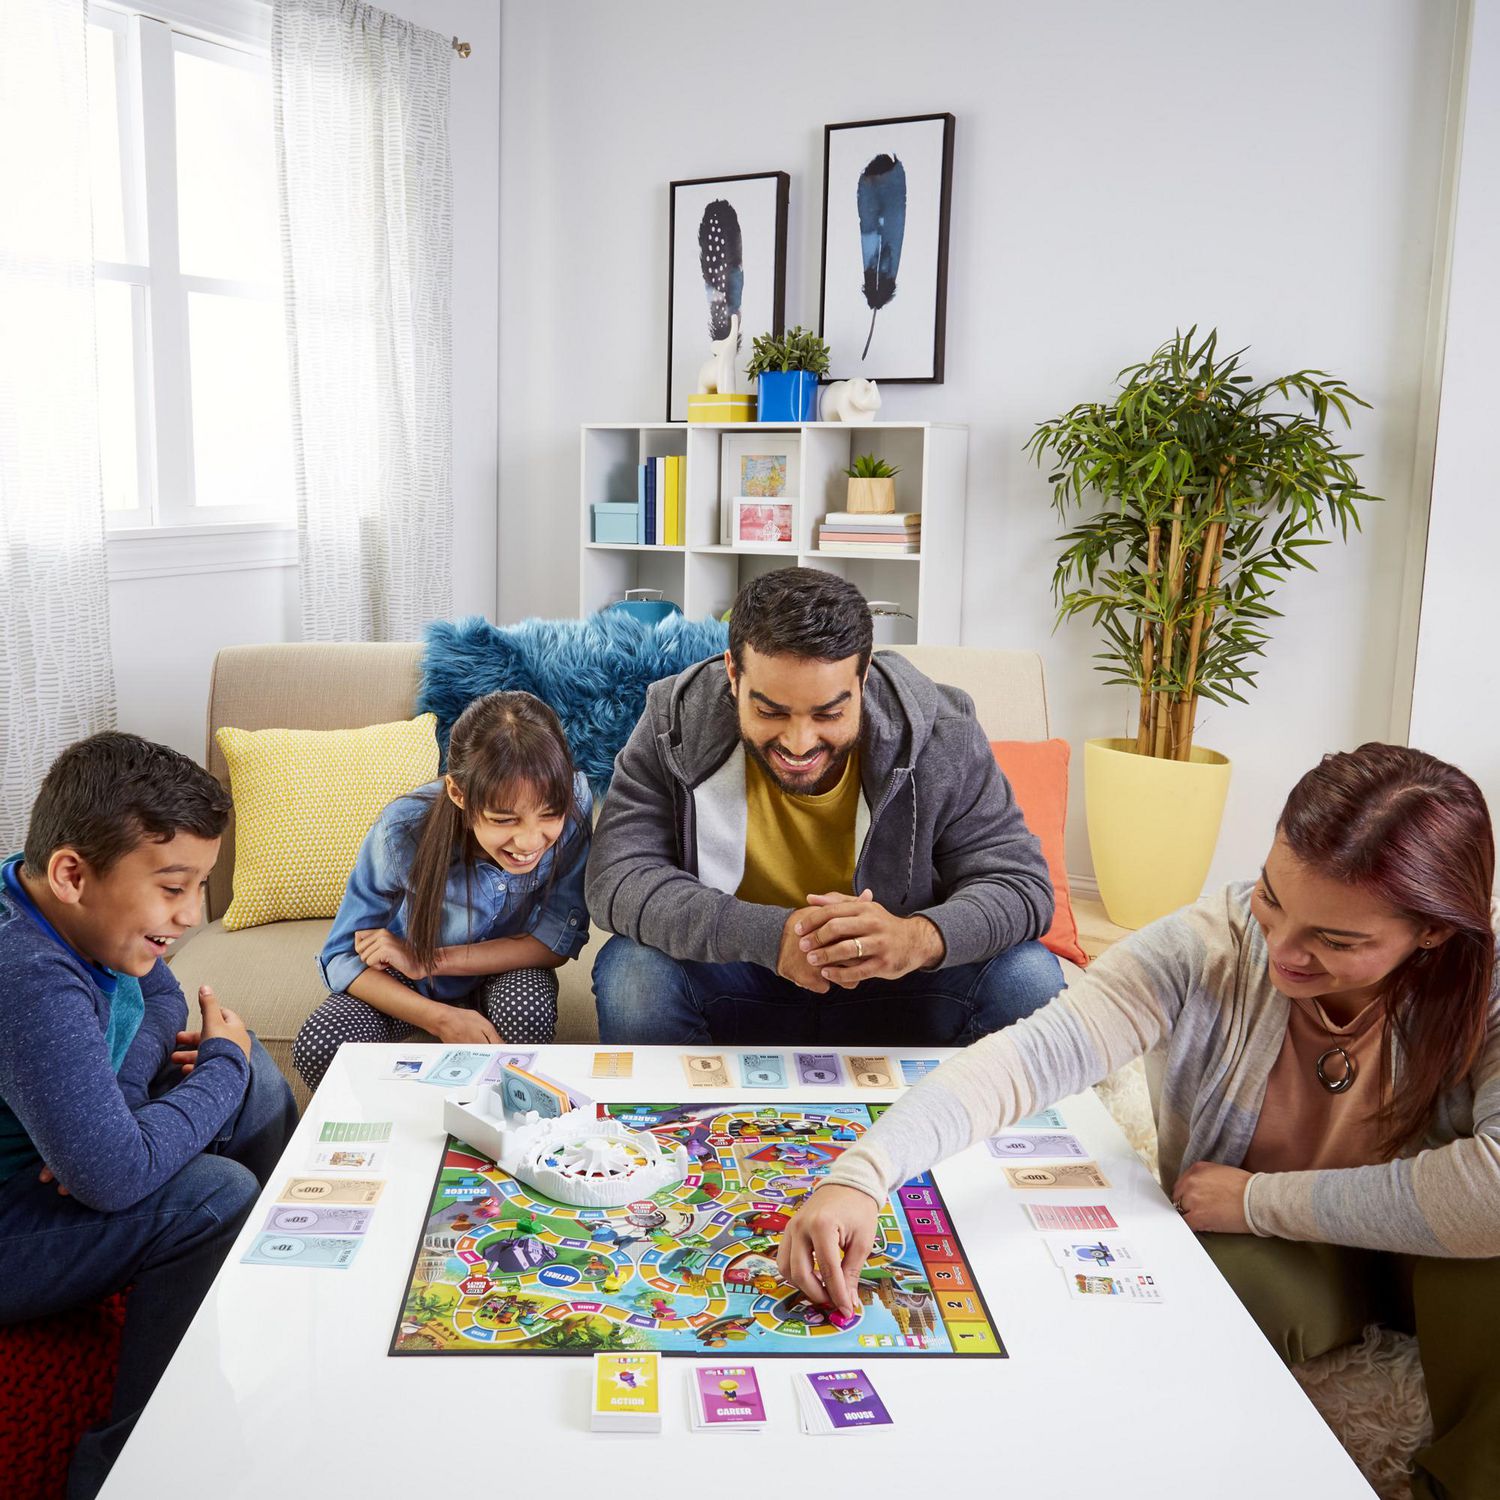 Destins Le jeu de la vie, jeu de plateau pour la famille, 2 à 4 joueurs, jeu  d'intérieur pour enfants, à partir de 8 ans, 6 couleurs de pions À partir de